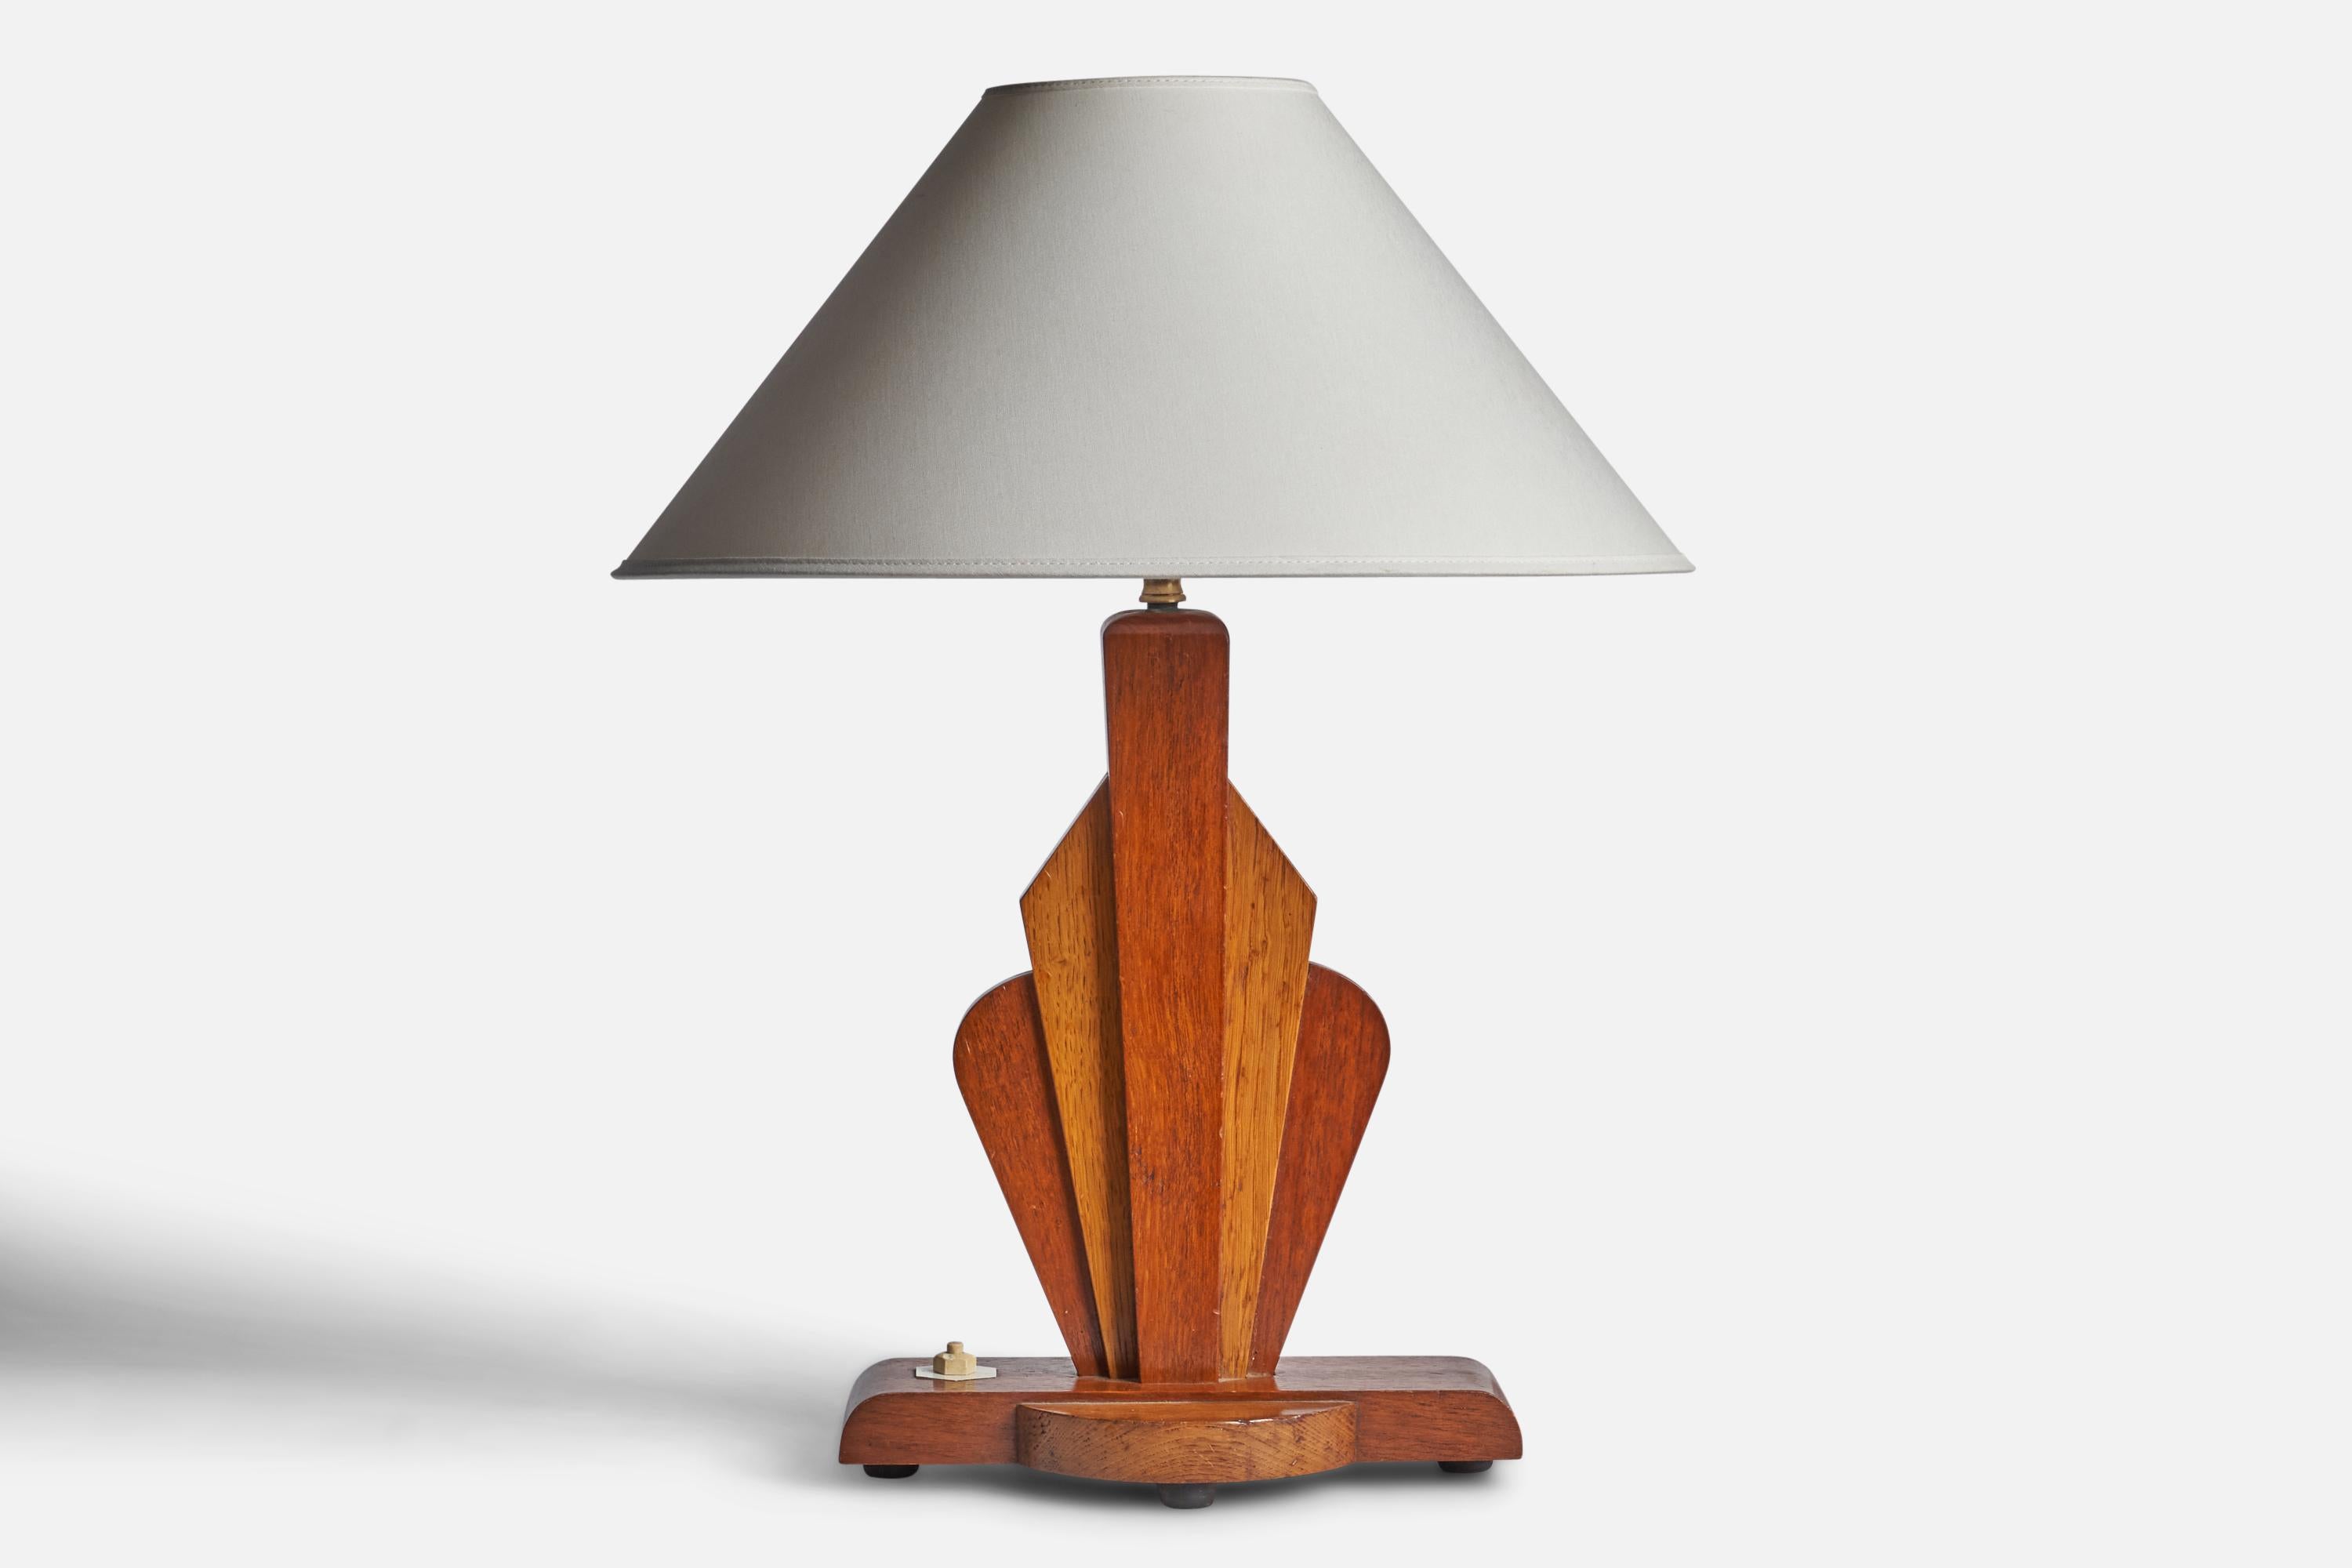 Tischlampe aus Birke und Teakholz, entworfen und hergestellt in den USA, ca. 1950er Jahre.

Abmessungen der Lampe (Zoll): 16,25